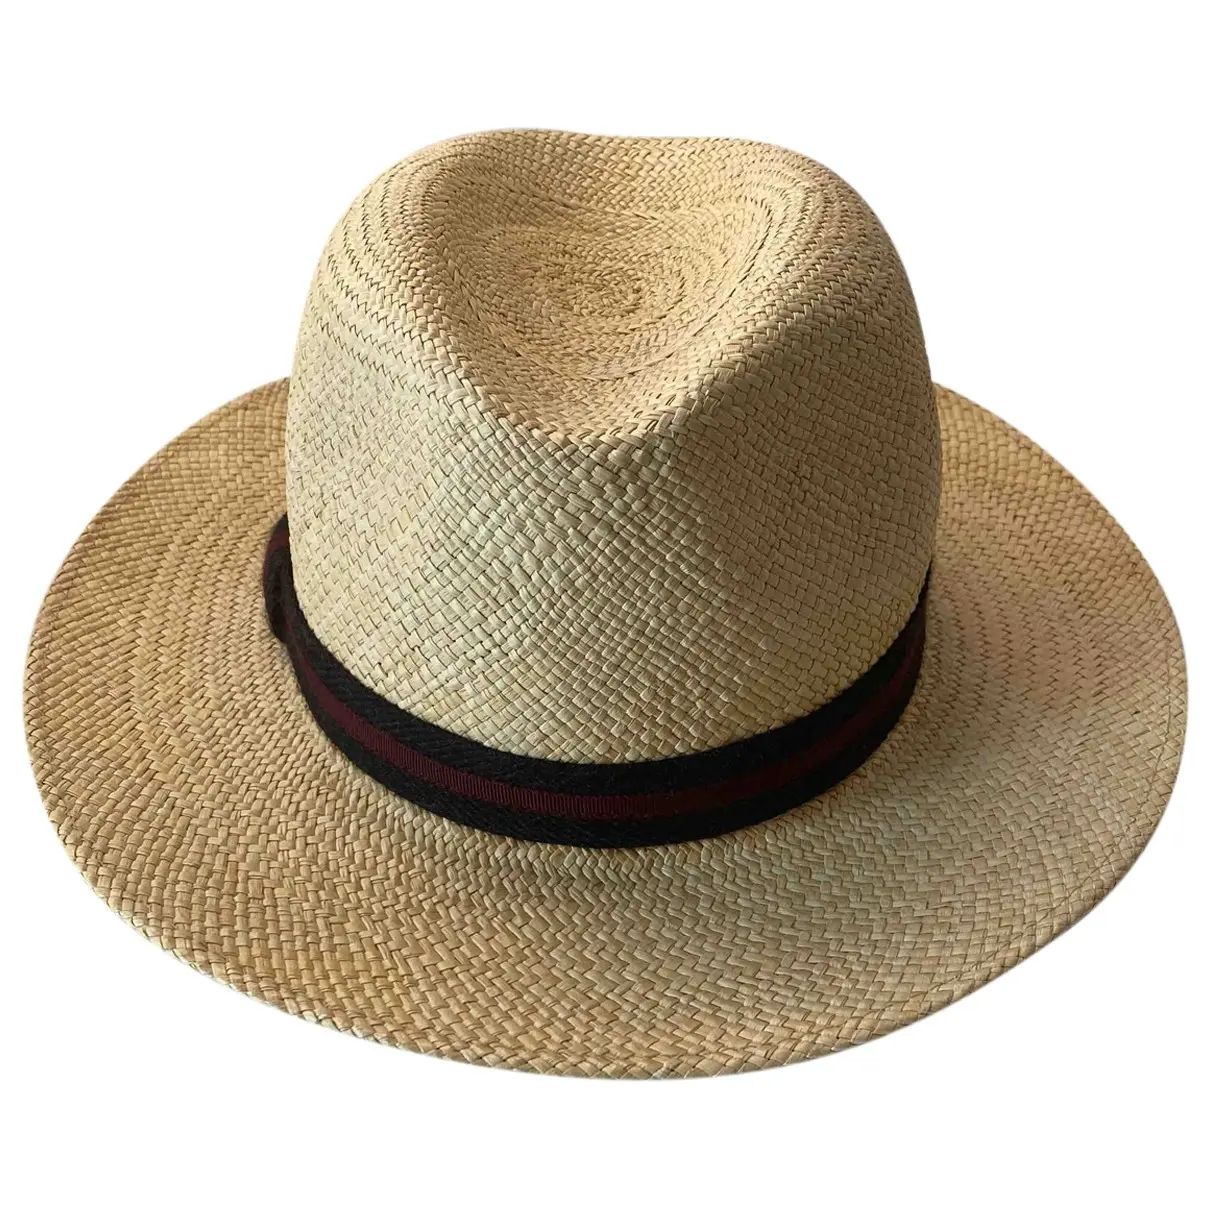 White Wicker Hat Théodore